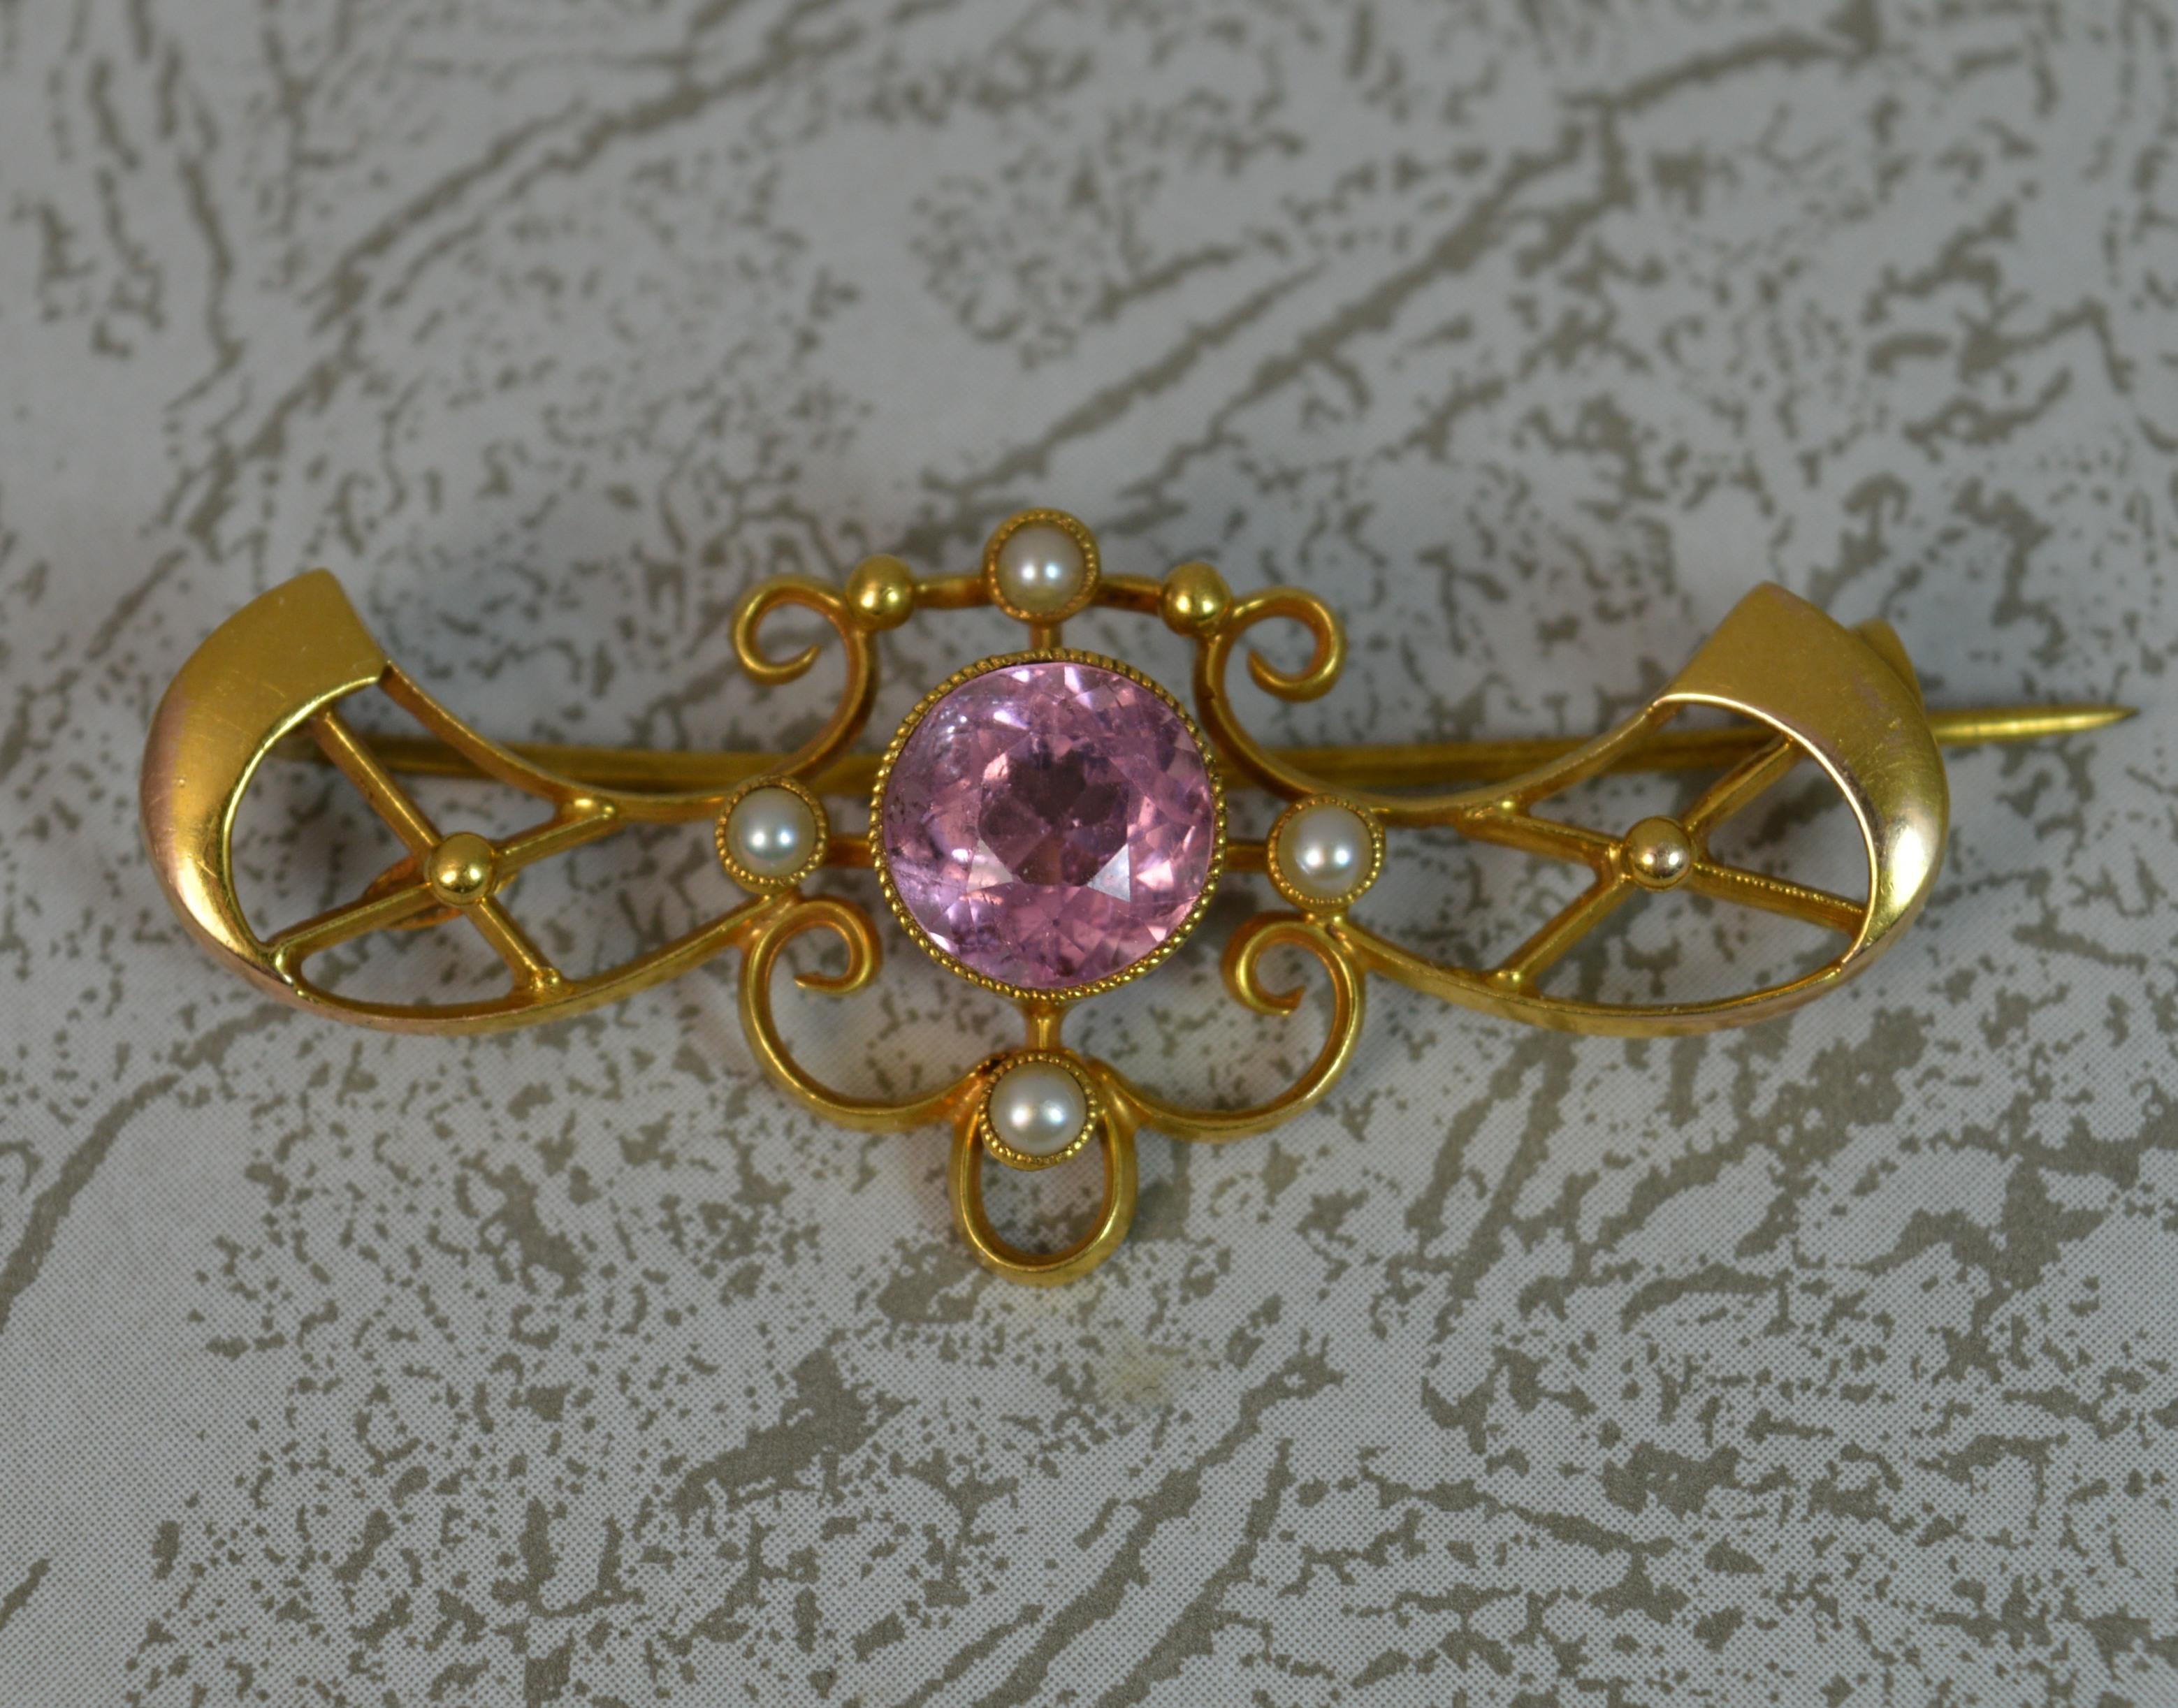 Women's Art Nouveau 15 Carat Gold Pink Tourmaline Pearl Brooch